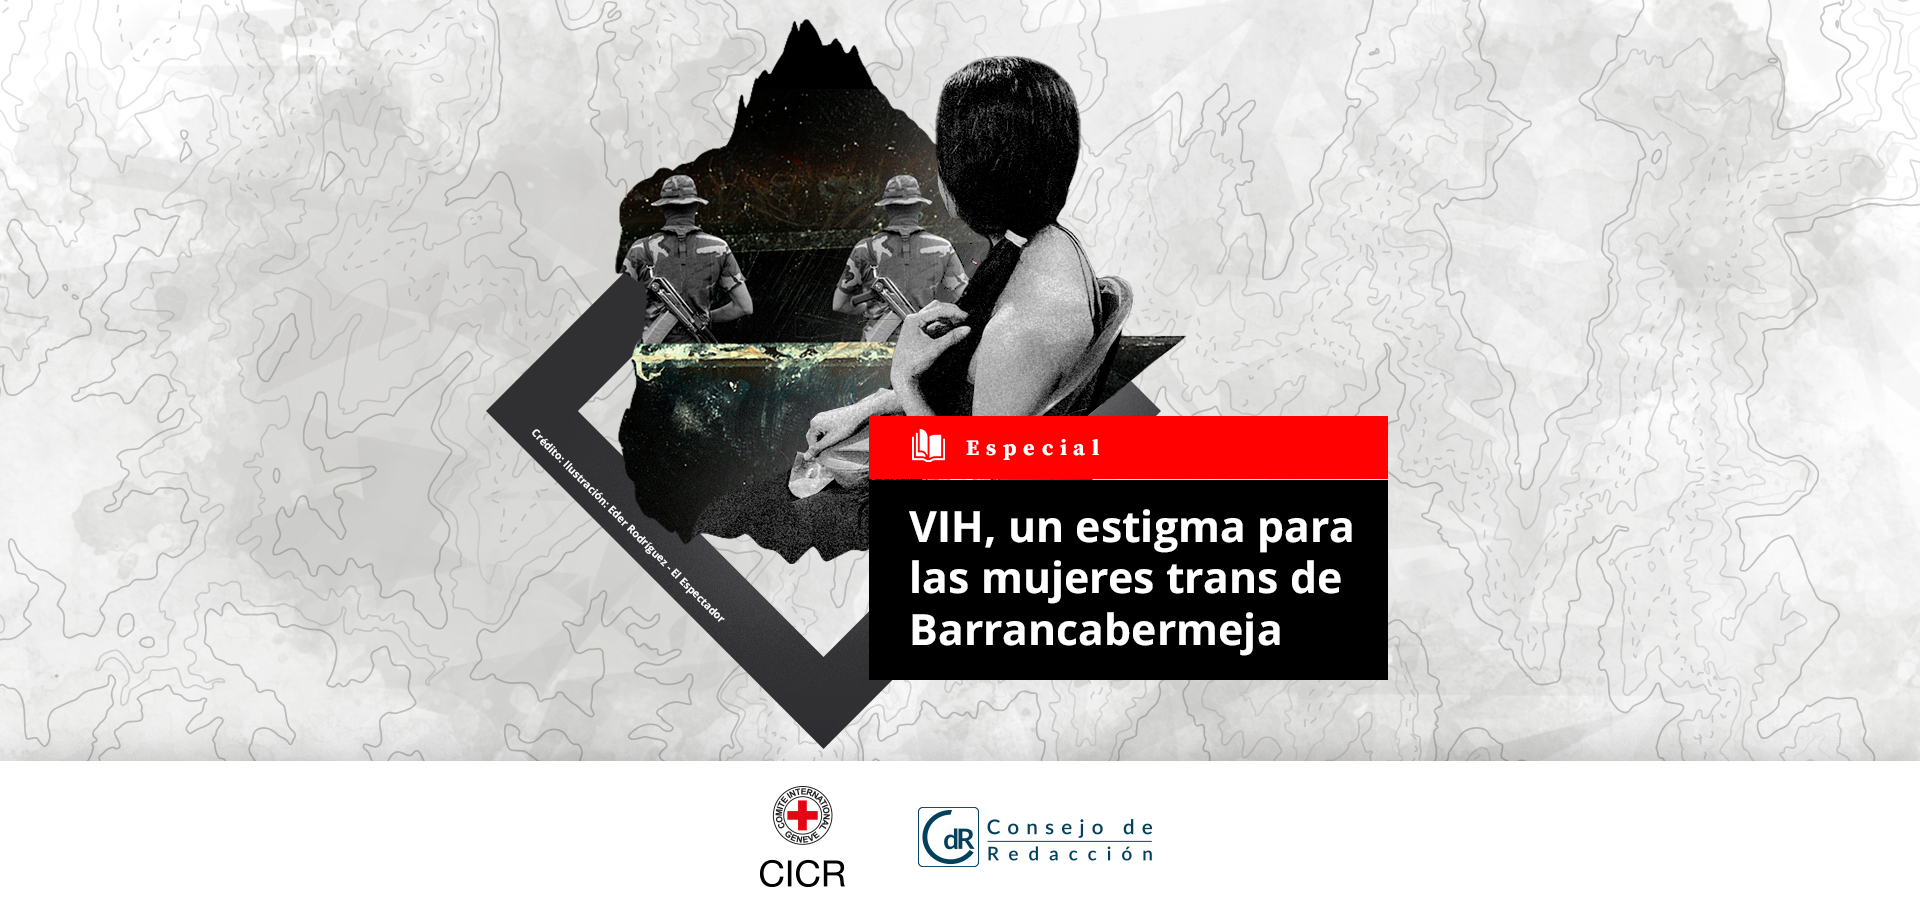 VIH, un estigma para las mujeres trans de Barrancabermeja